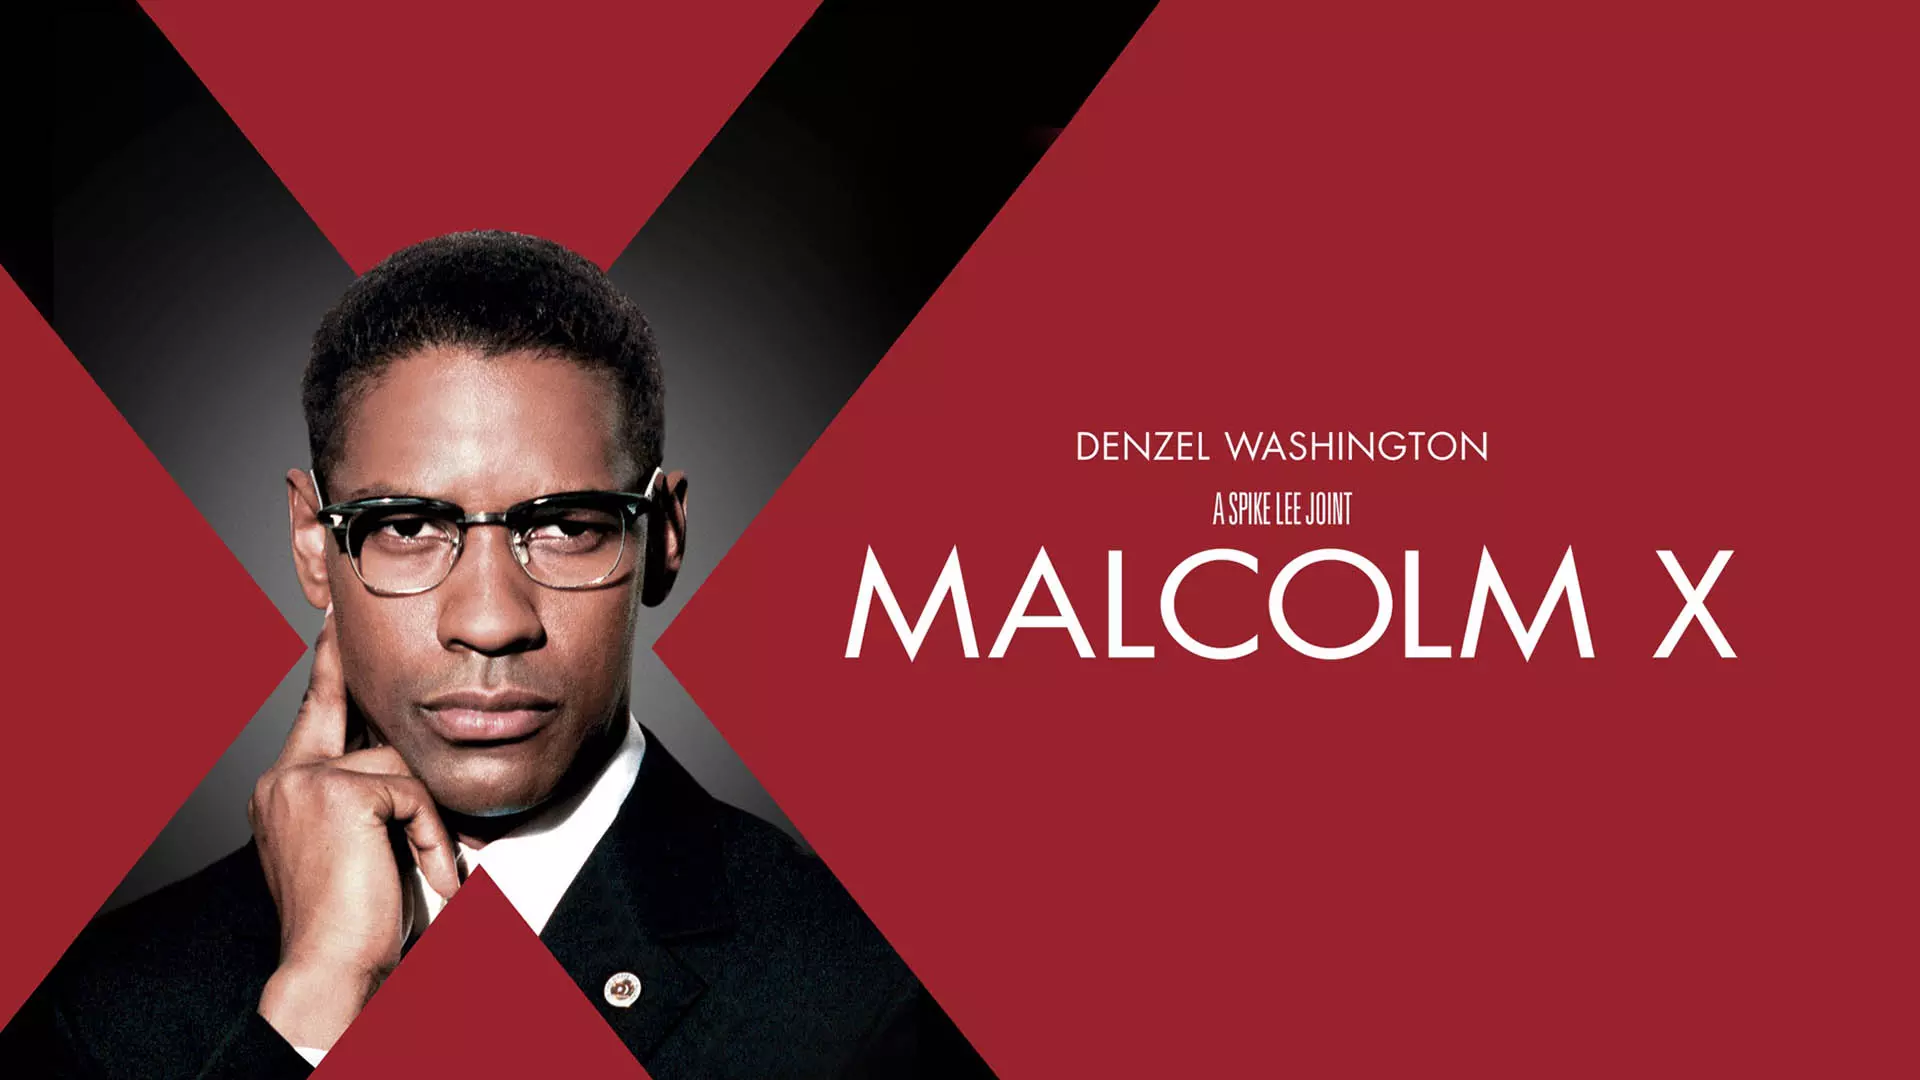 کاور فیلم Malcolm X با حضور دنزل واشنگتن